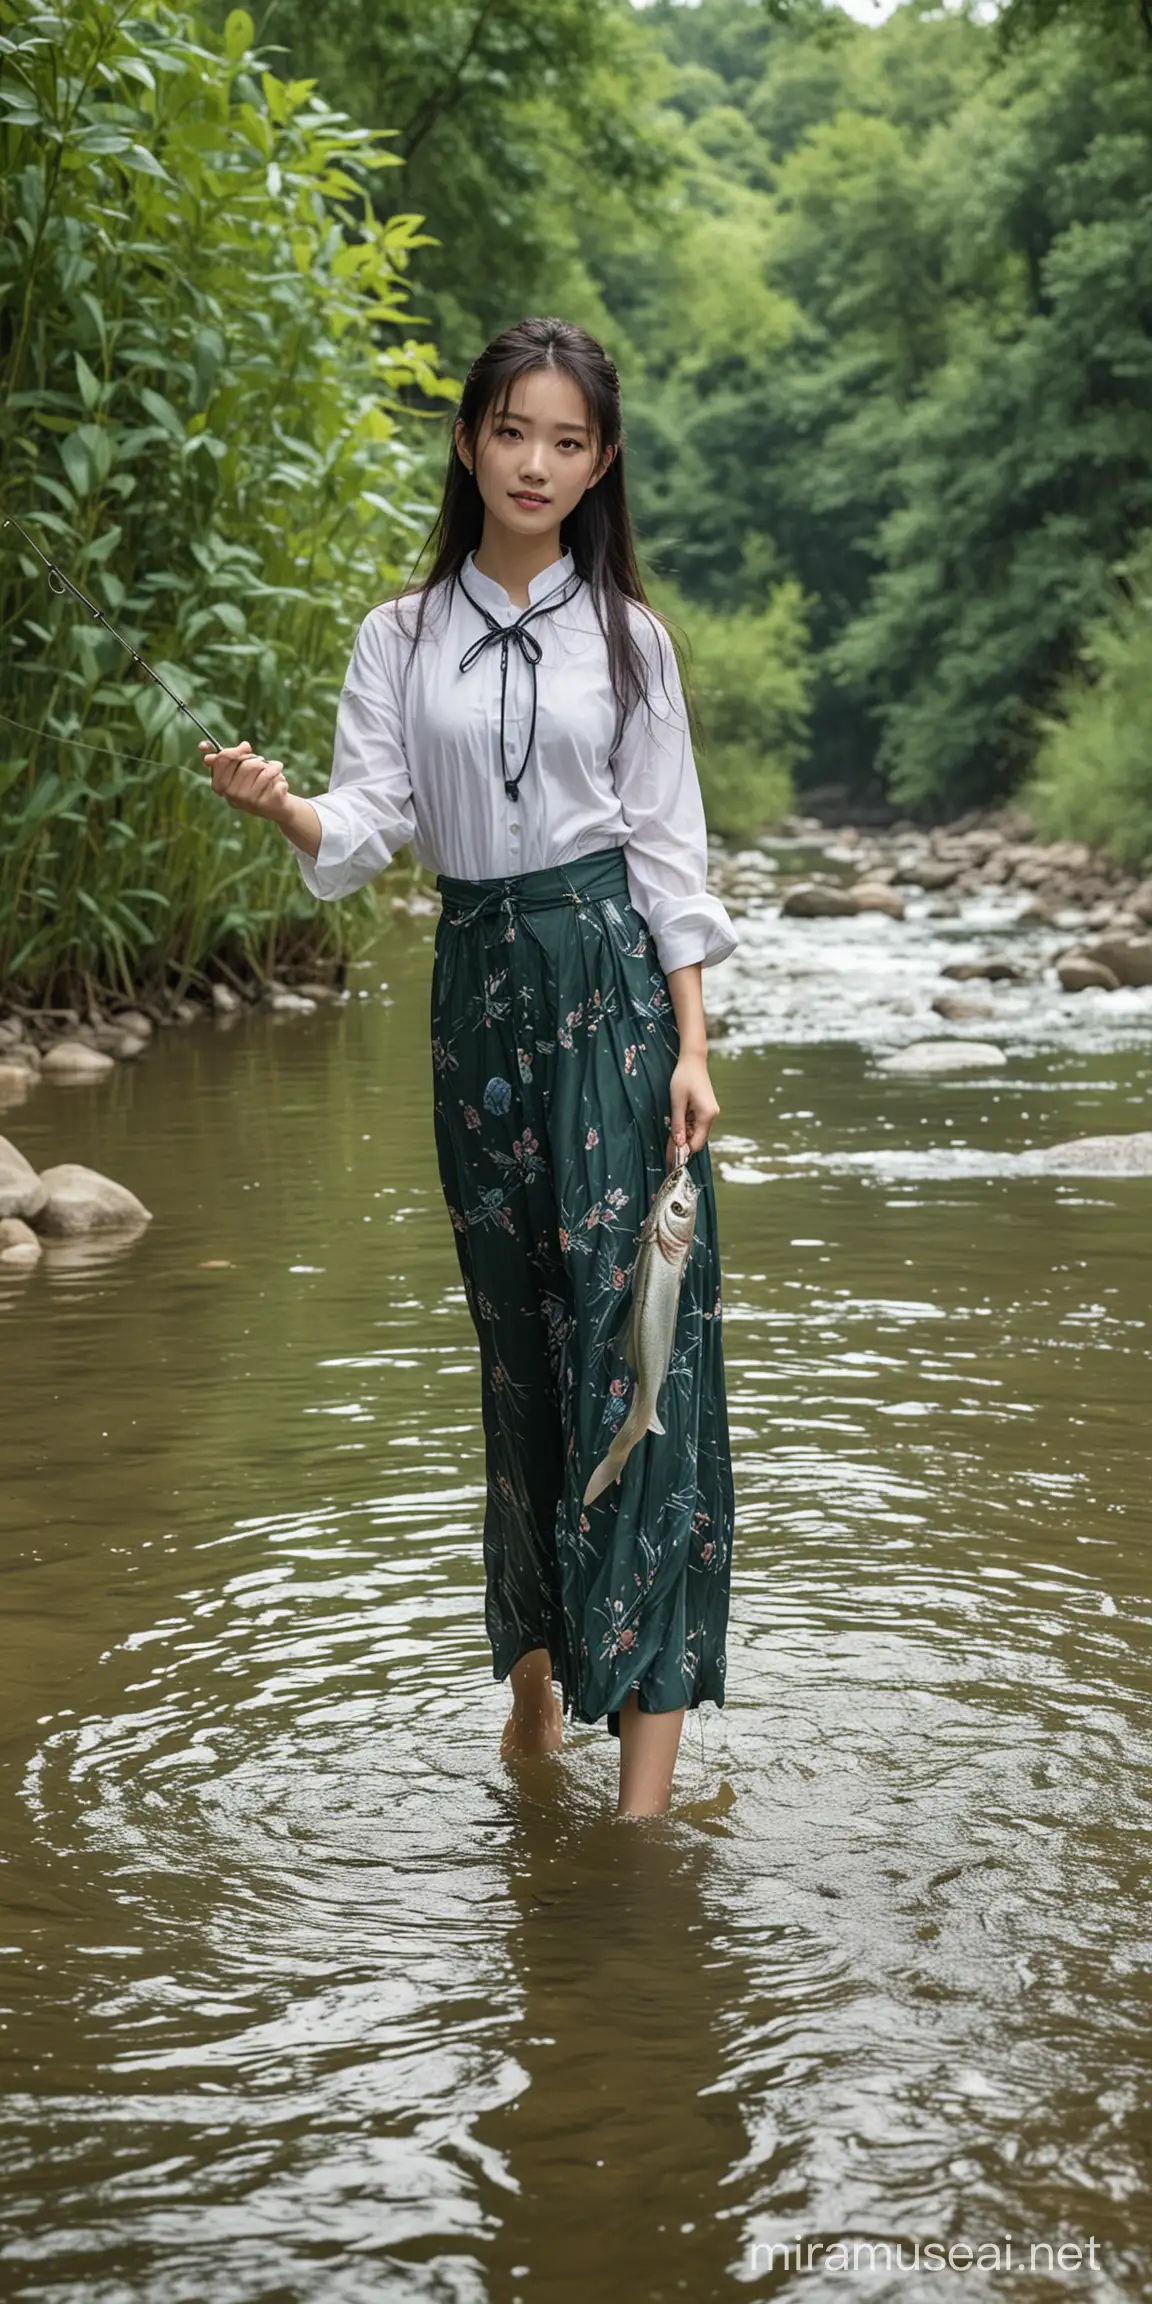 16岁中国美女，在小溪里抓鱼，周围环境优美。